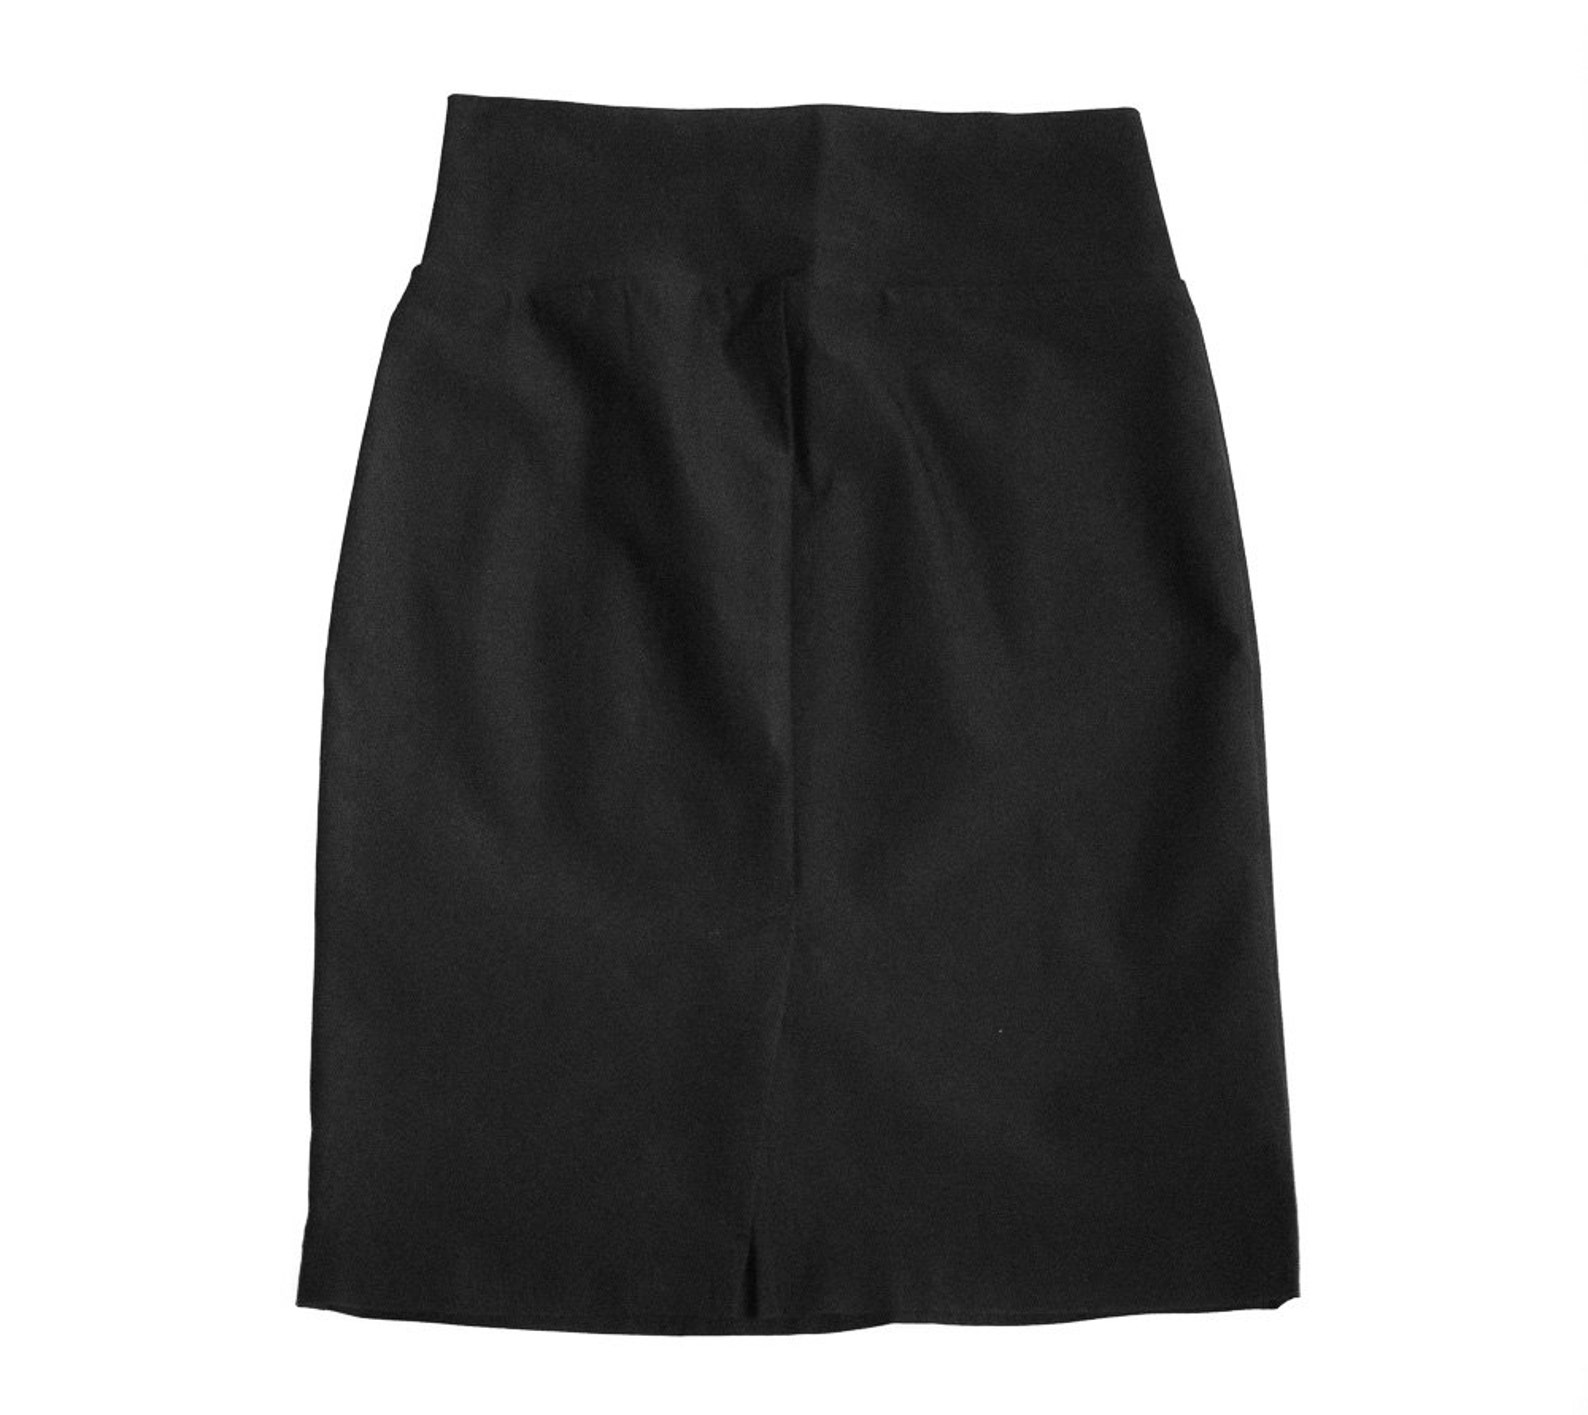 Vintage Skirt Charlotte Russe Black Skirt 1990s Skirts | Etsy